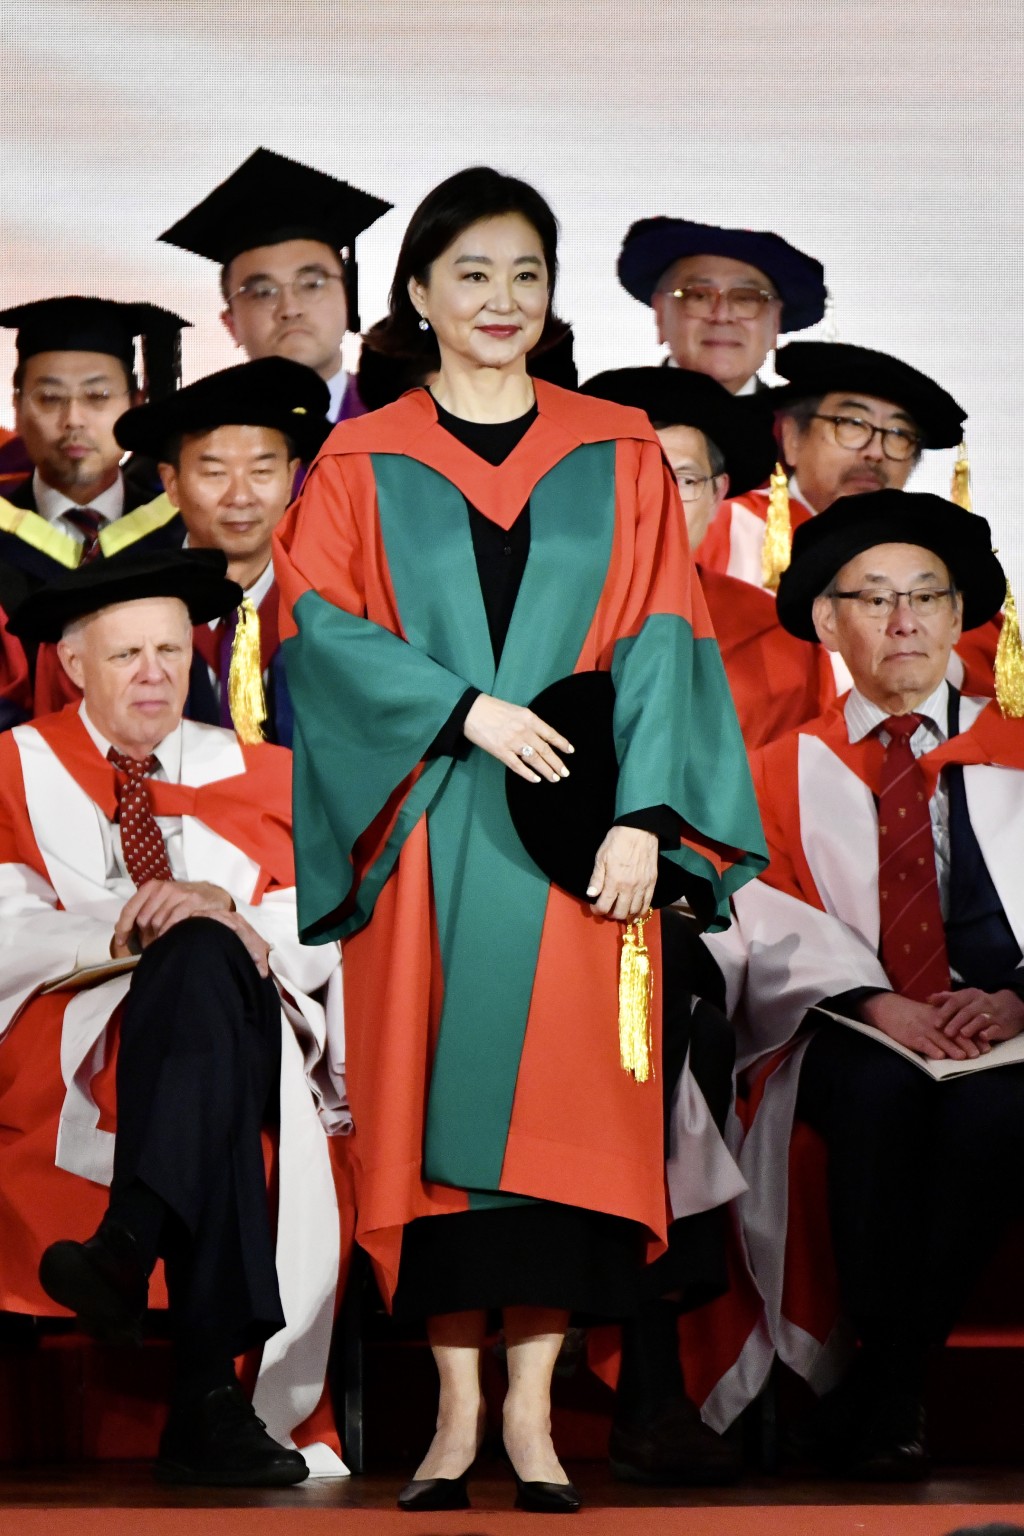 林青霞去年获香港大学颁授名誉社会科学博士学位，以表扬其艺术文化贡献。